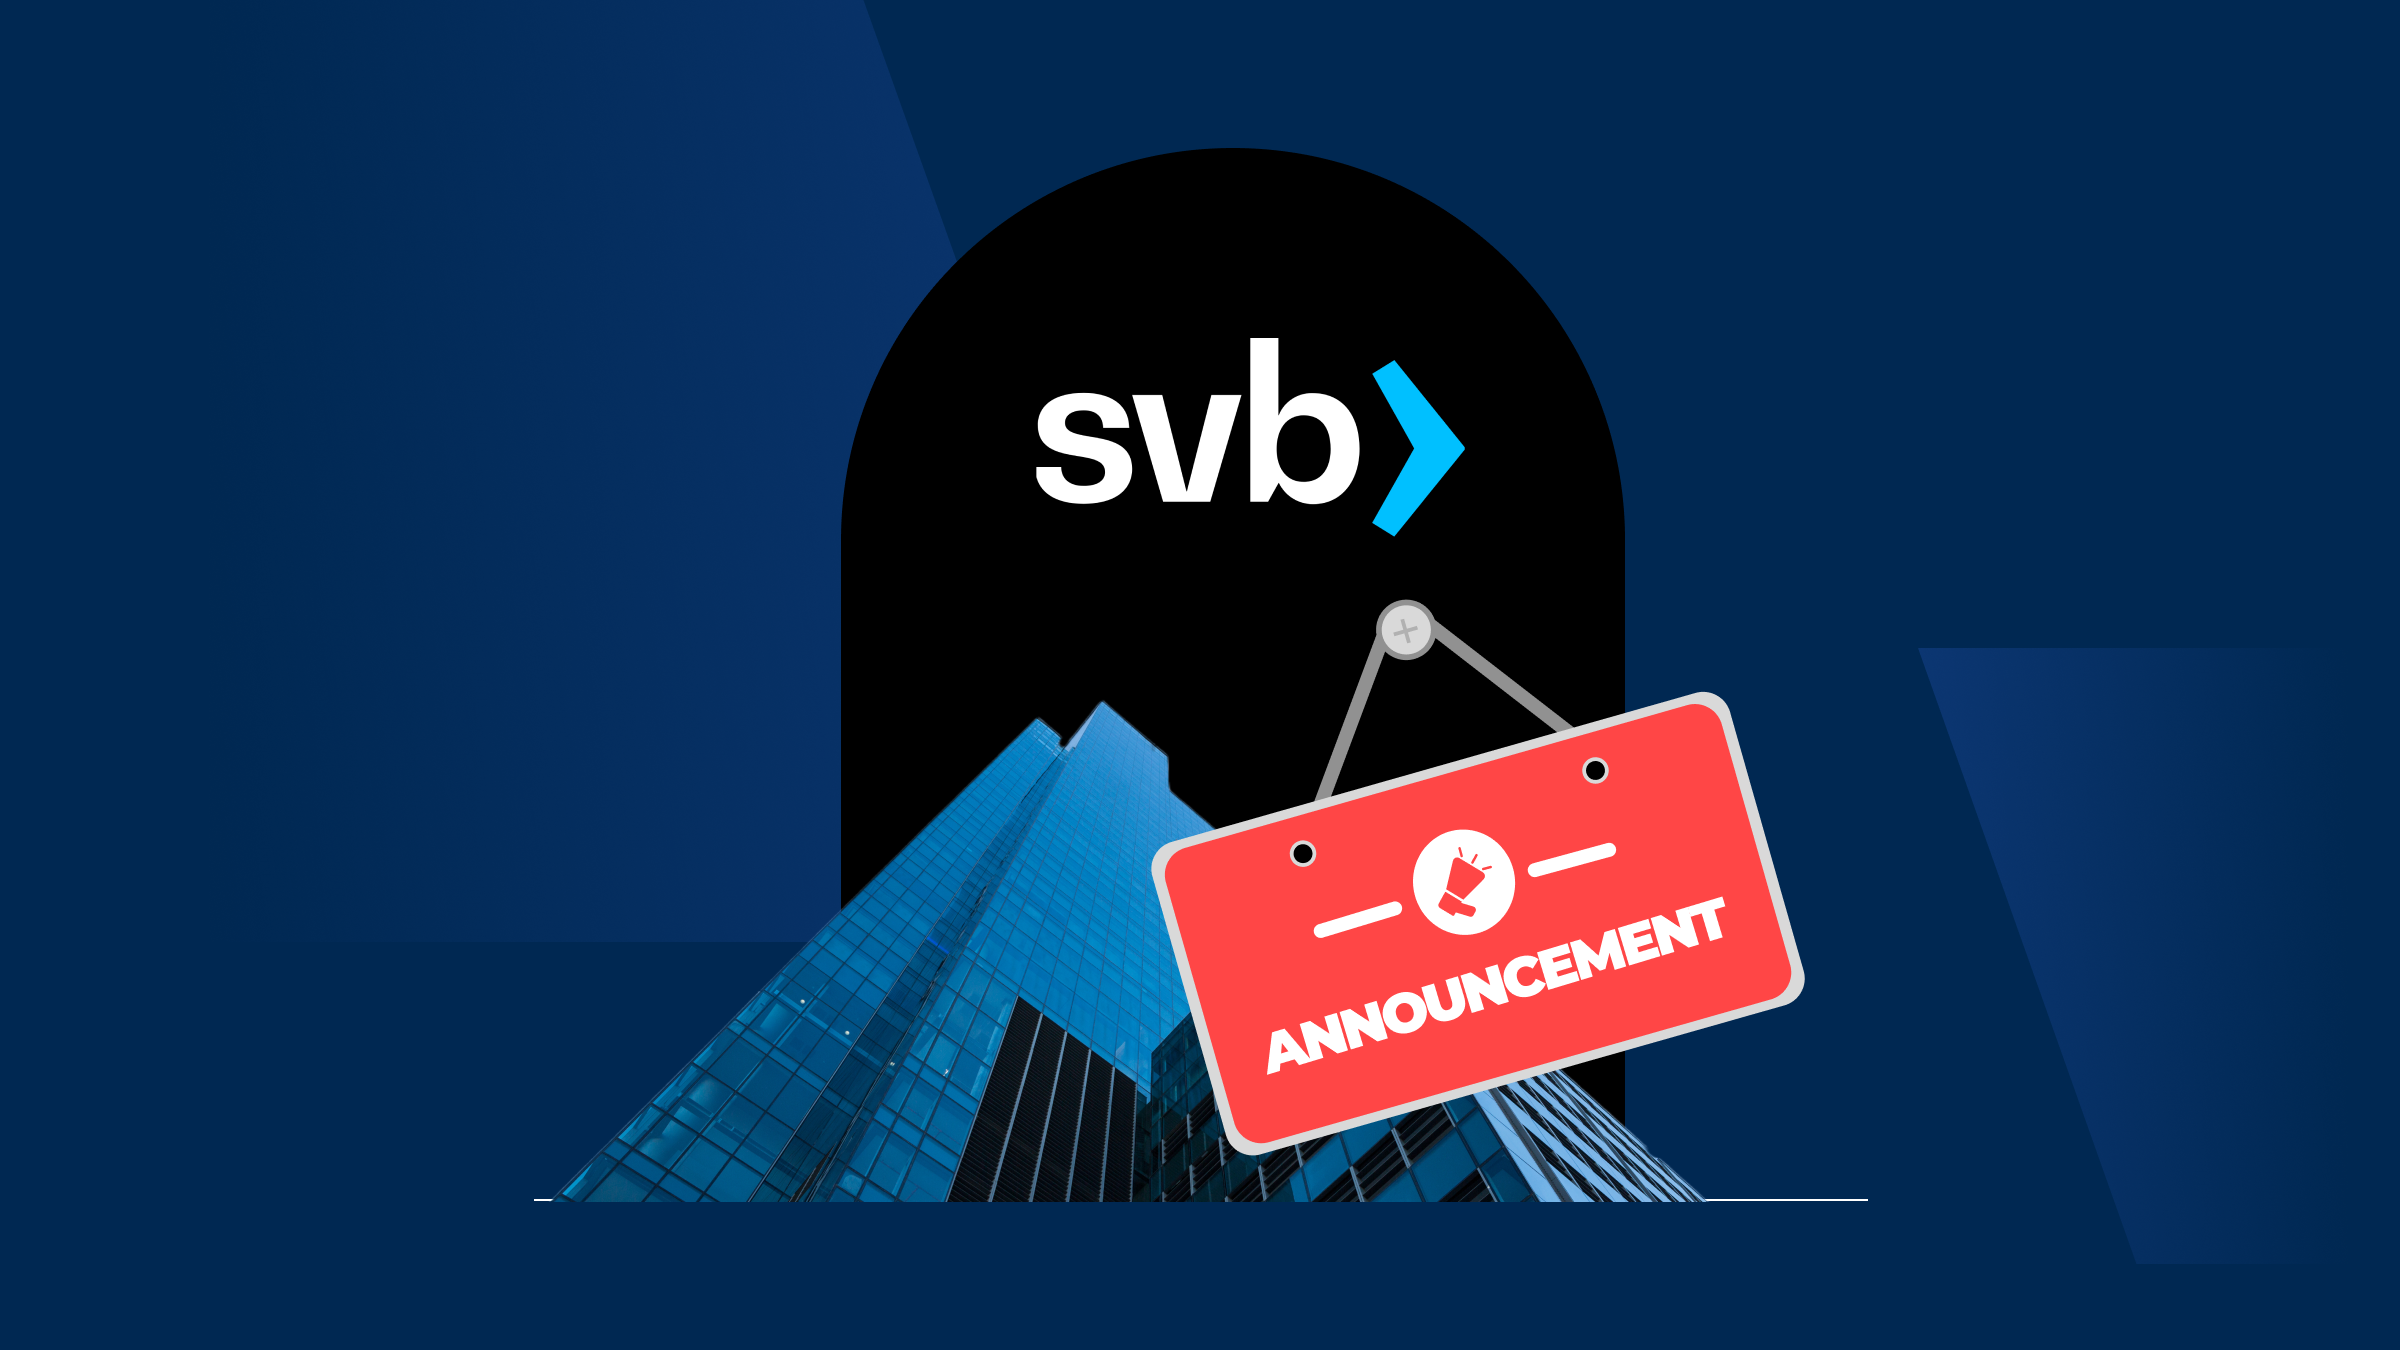 Announcement regarding SVB closure